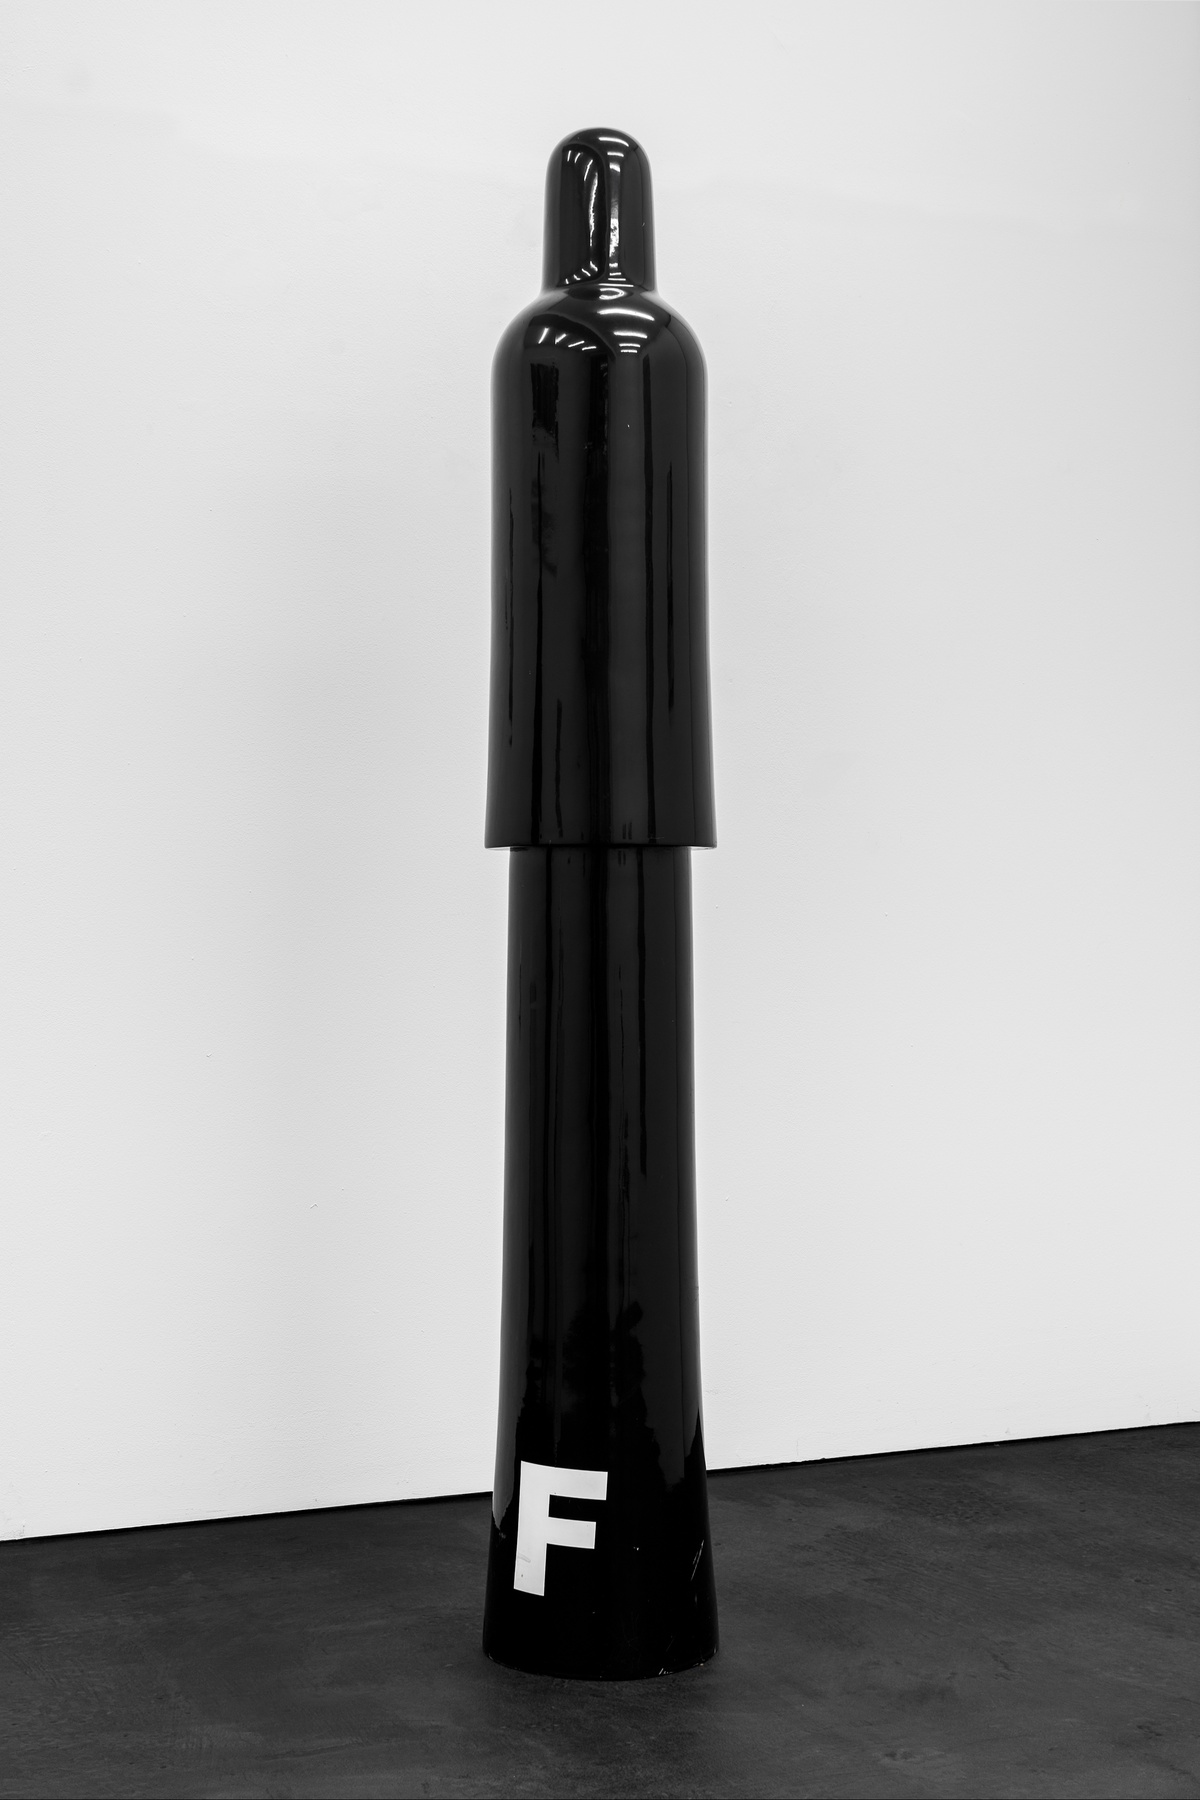 Jef GeysSchildwachten (Darth Vader), 1990 -1994 polymer, lacquer185 × 40 cm